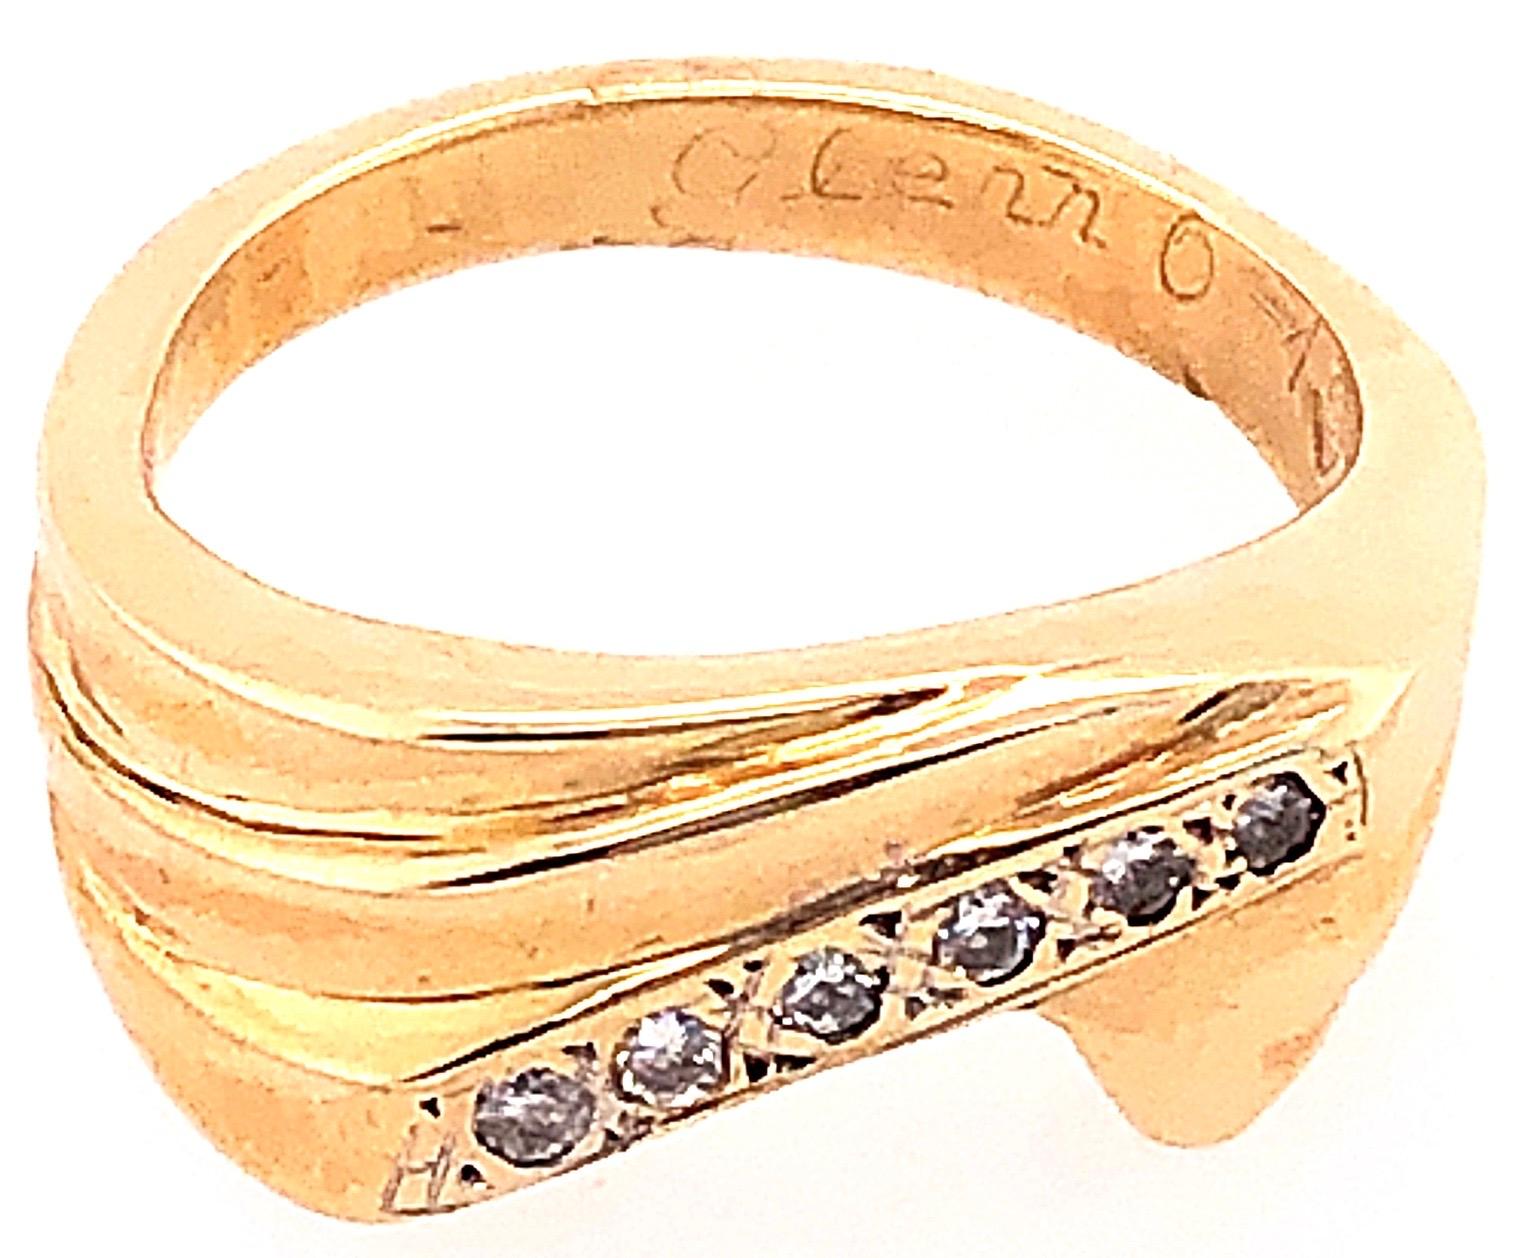 14 Karat Gelbgold und Diamant Freiform Ring Größe 6,25.
0.30 Gesamtgewicht der Diamanten.
7.76 Gramm Gesamtgewicht.